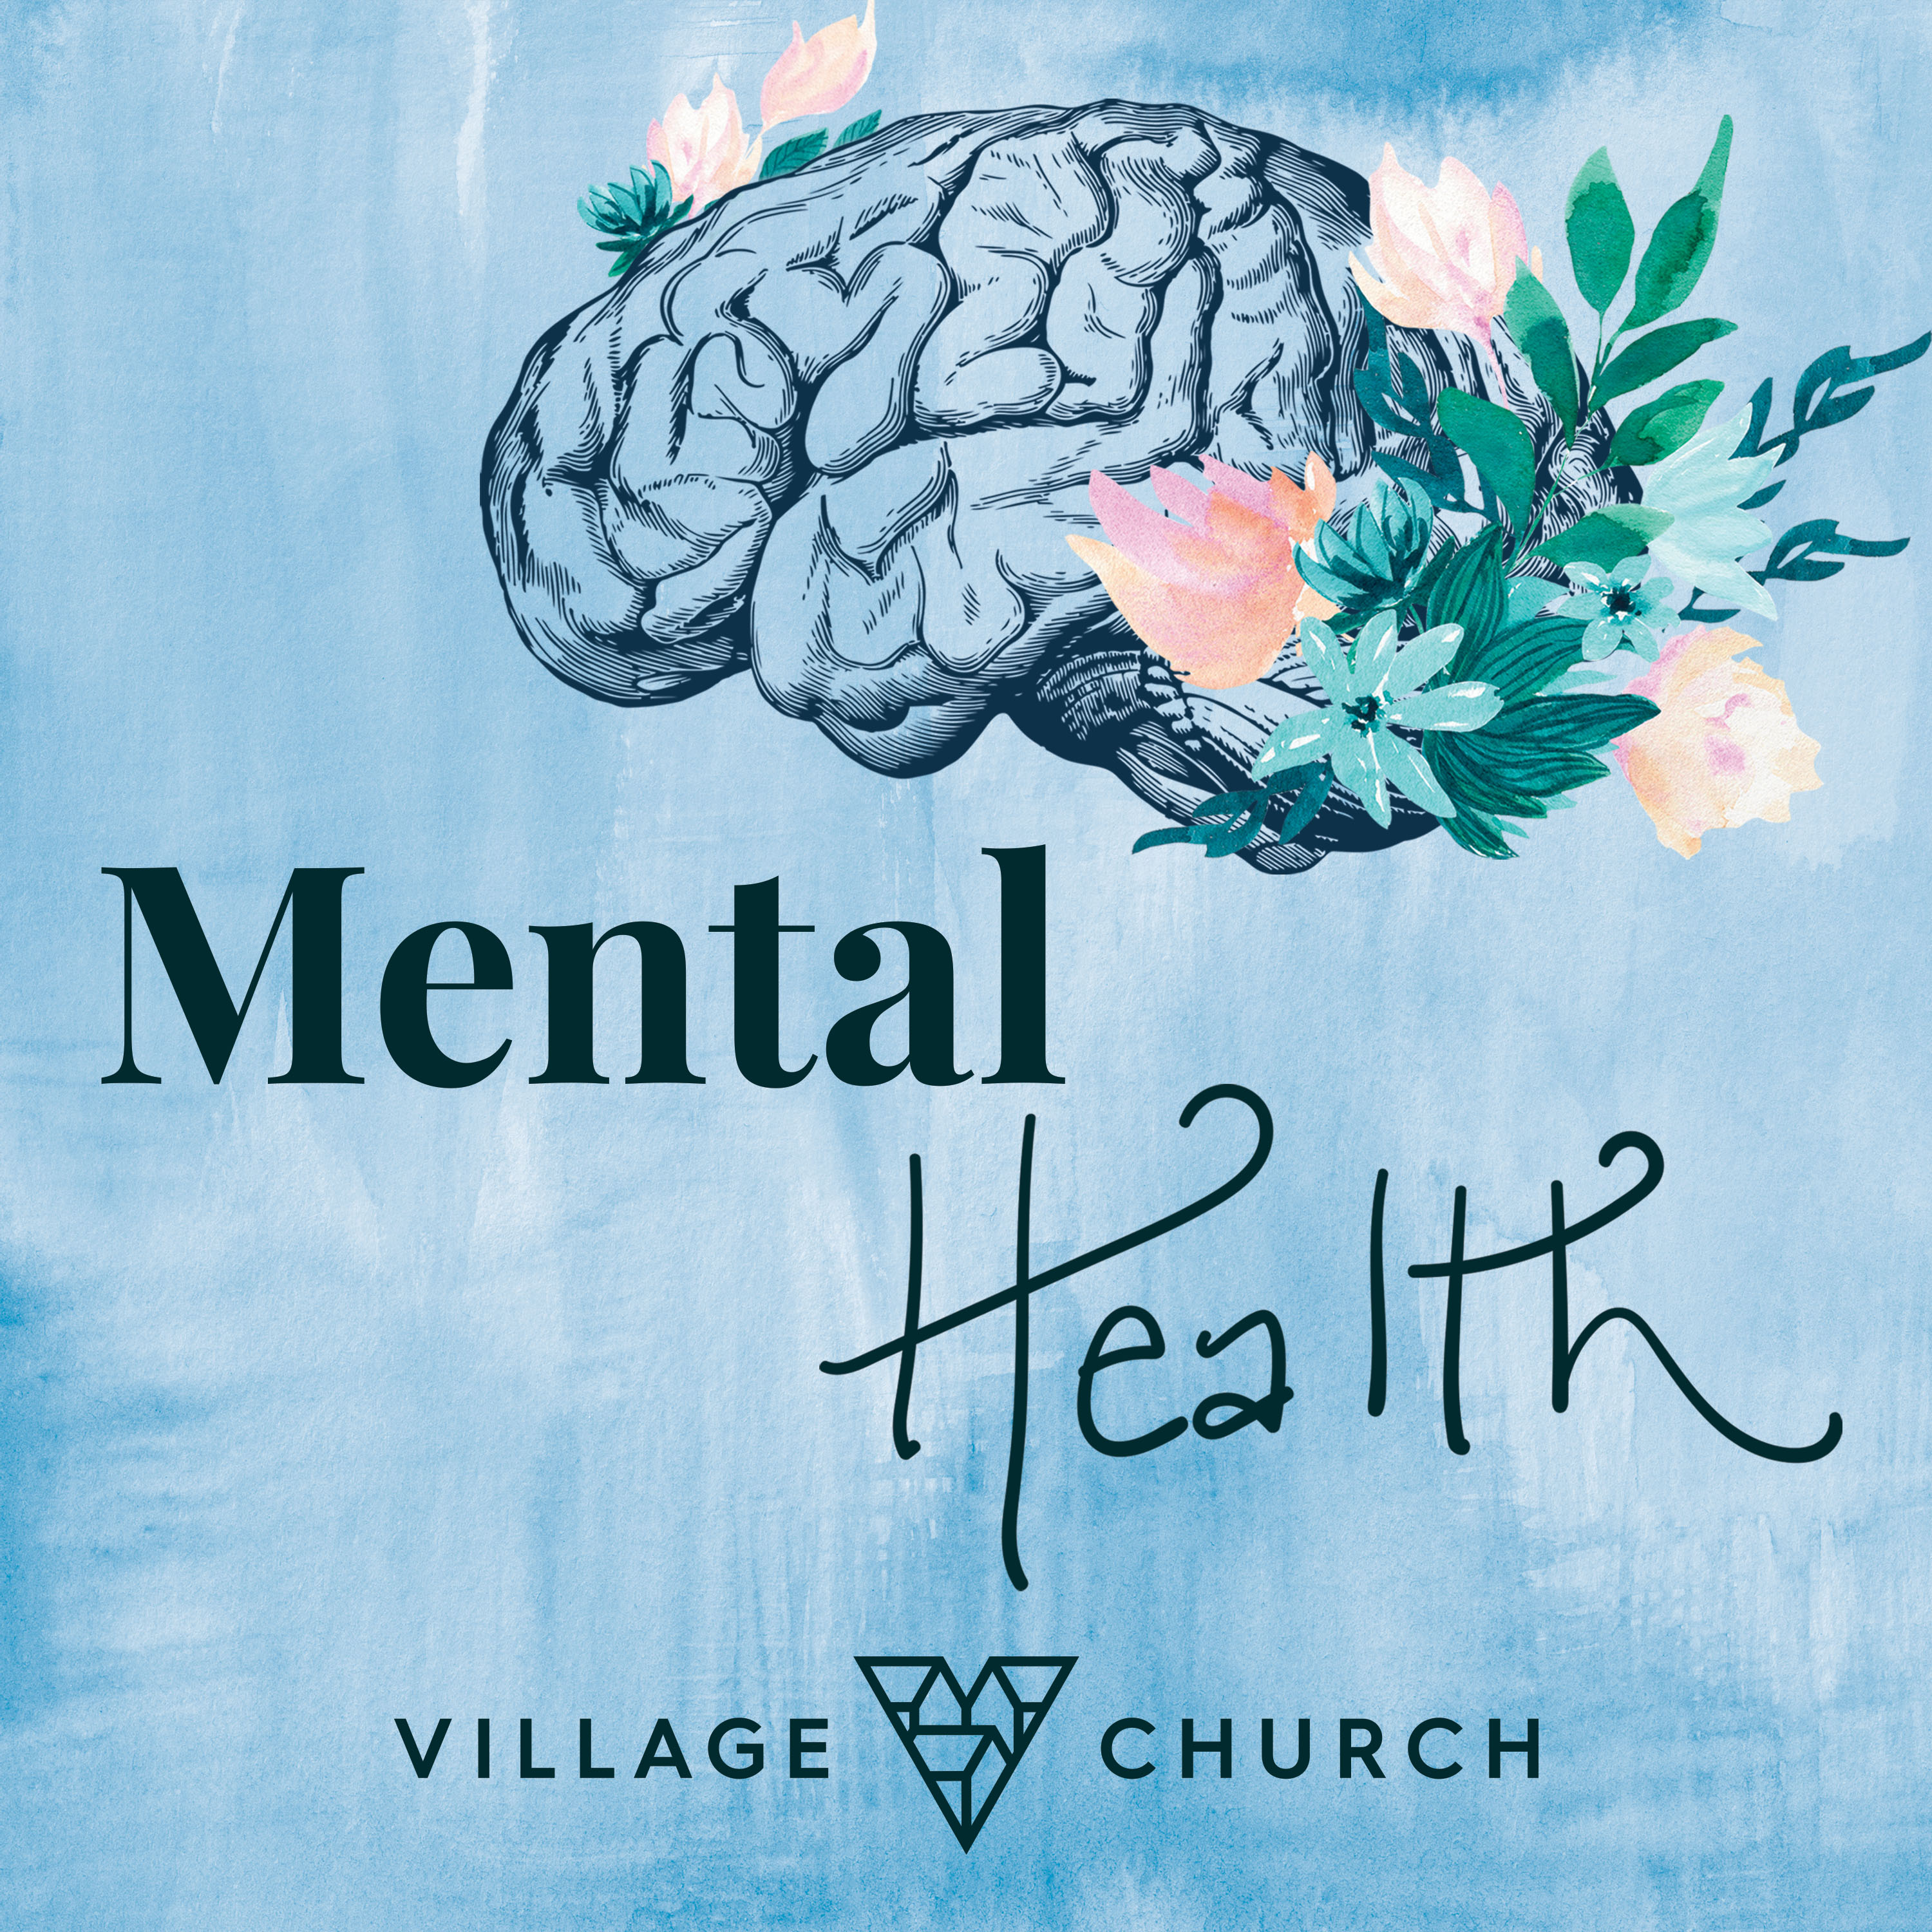 Village Church Mental Health